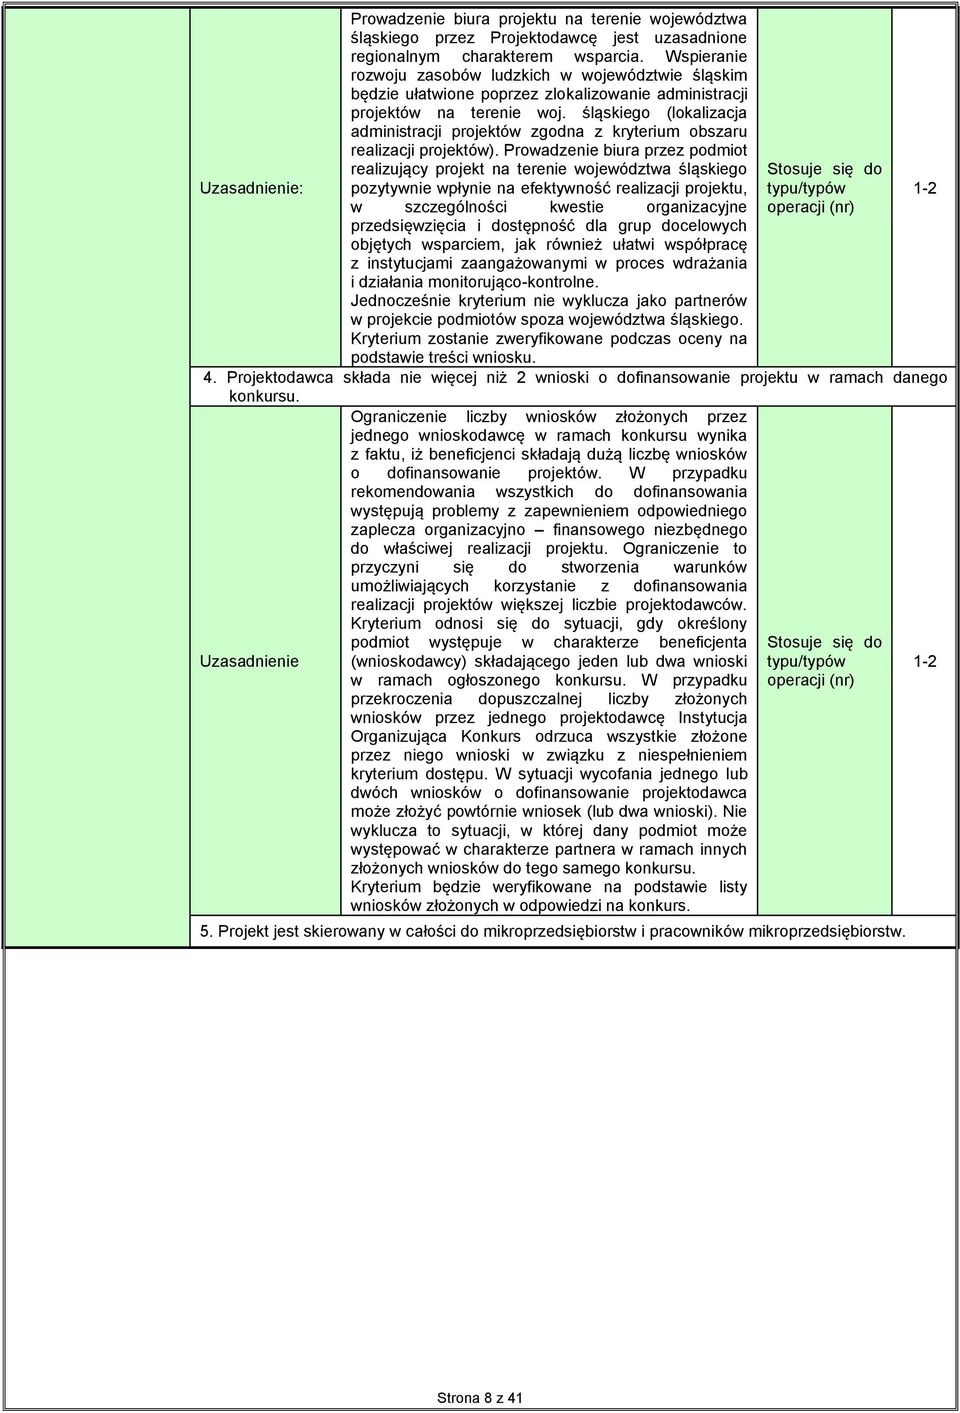 śląskiego (lokalizacja administracji projektów zgodna z kryterium obszaru realizacji projektów).